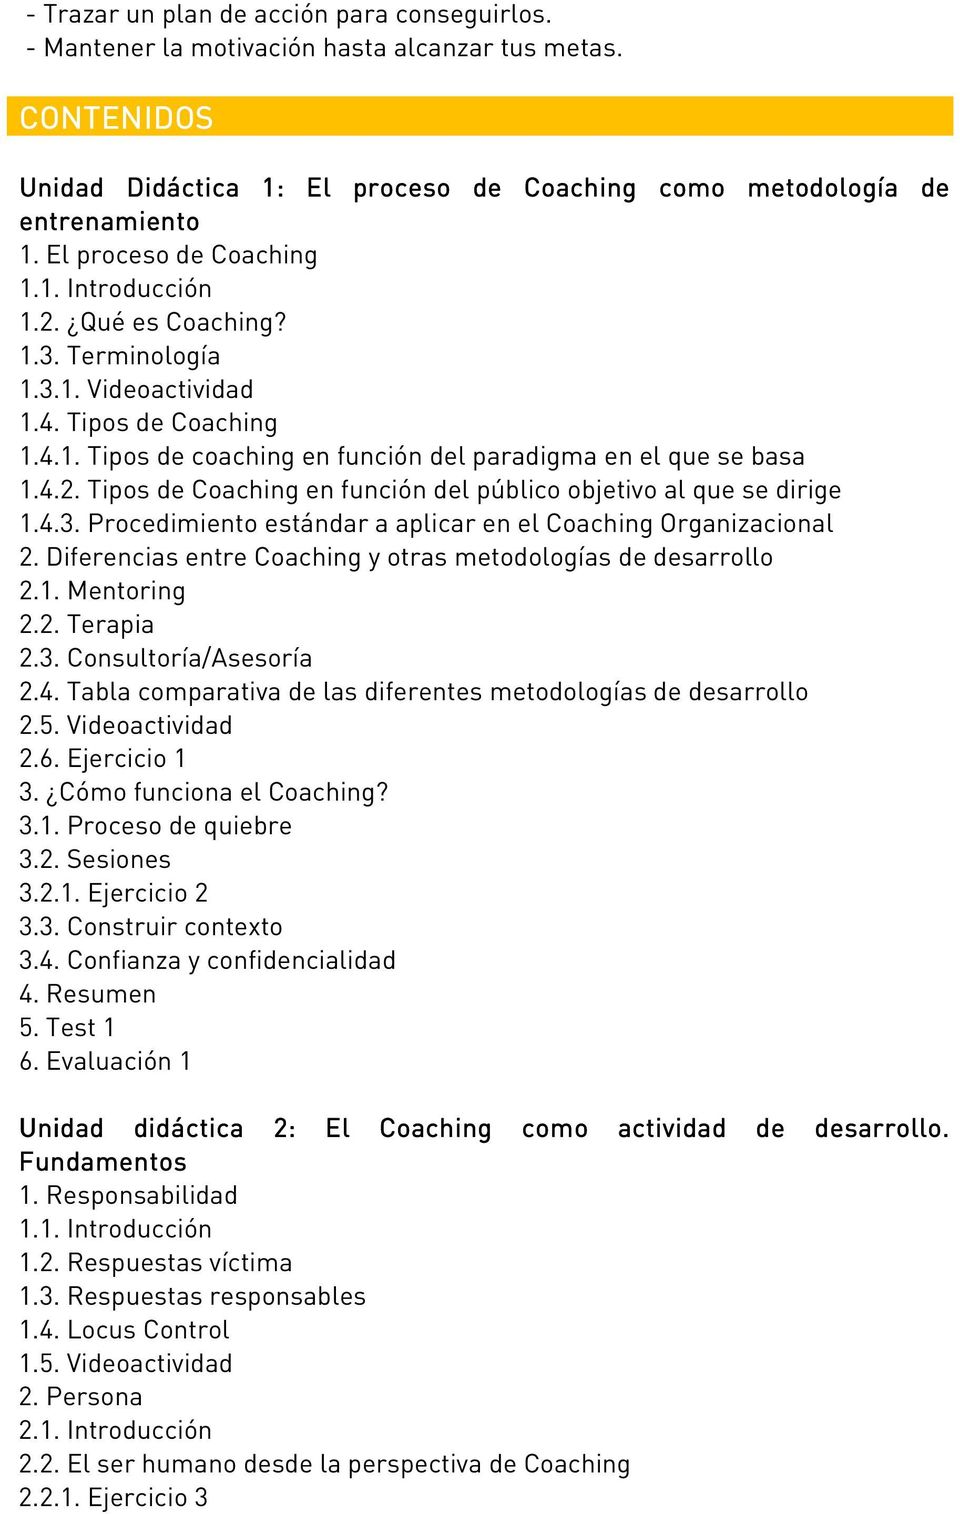 4.3. Procedimiento estándar a aplicar en el Coaching Organizacional 2. Diferencias entre Coaching y otras metodologías de desarrollo 2.1. Mentoring 2.2. Terapia 2.3. Consultoría/Asesoría 2.4. Tabla comparativa de las diferentes metodologías de desarrollo 2.